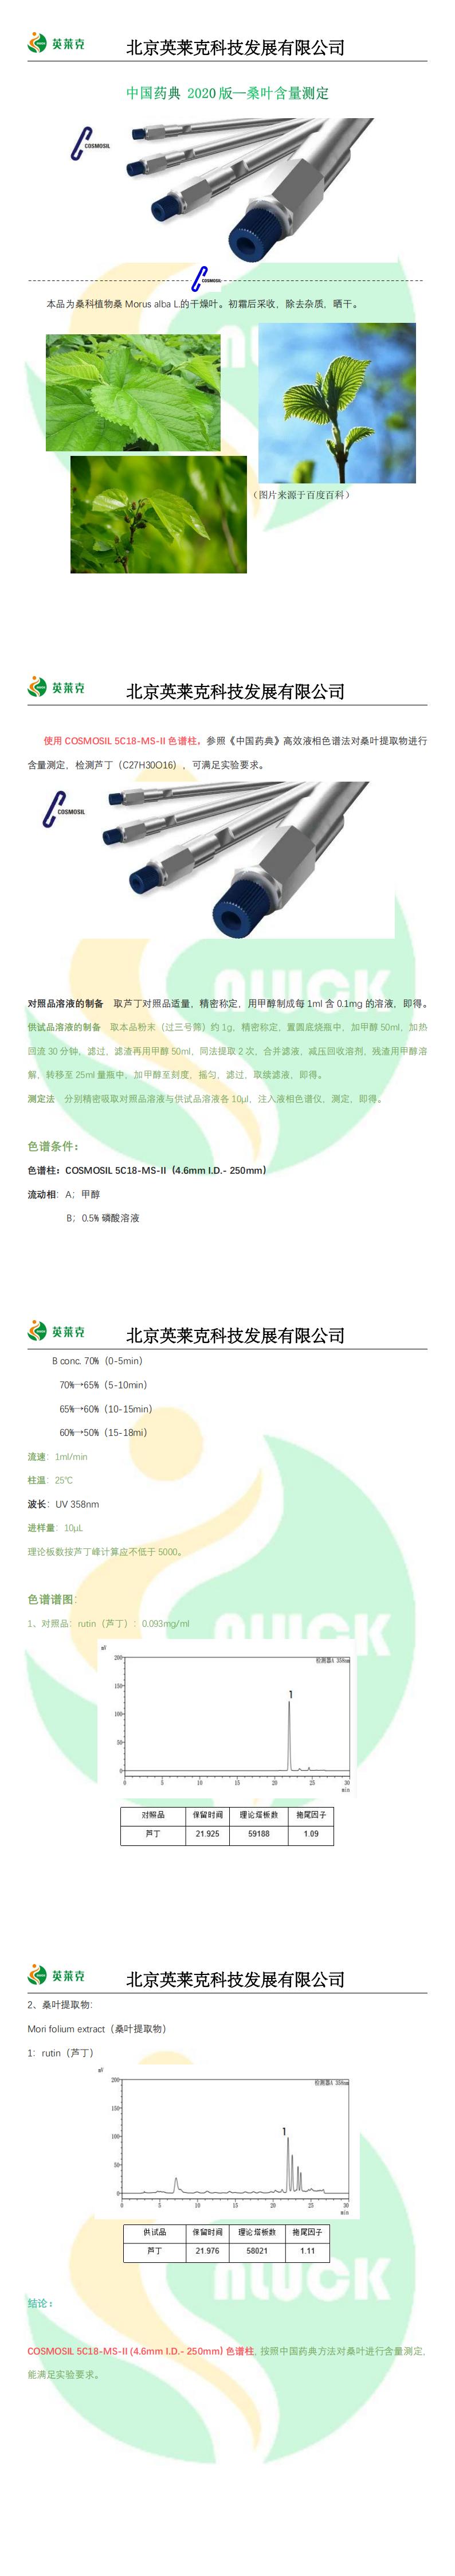 中国药典 2020版—桑叶含量测定_00